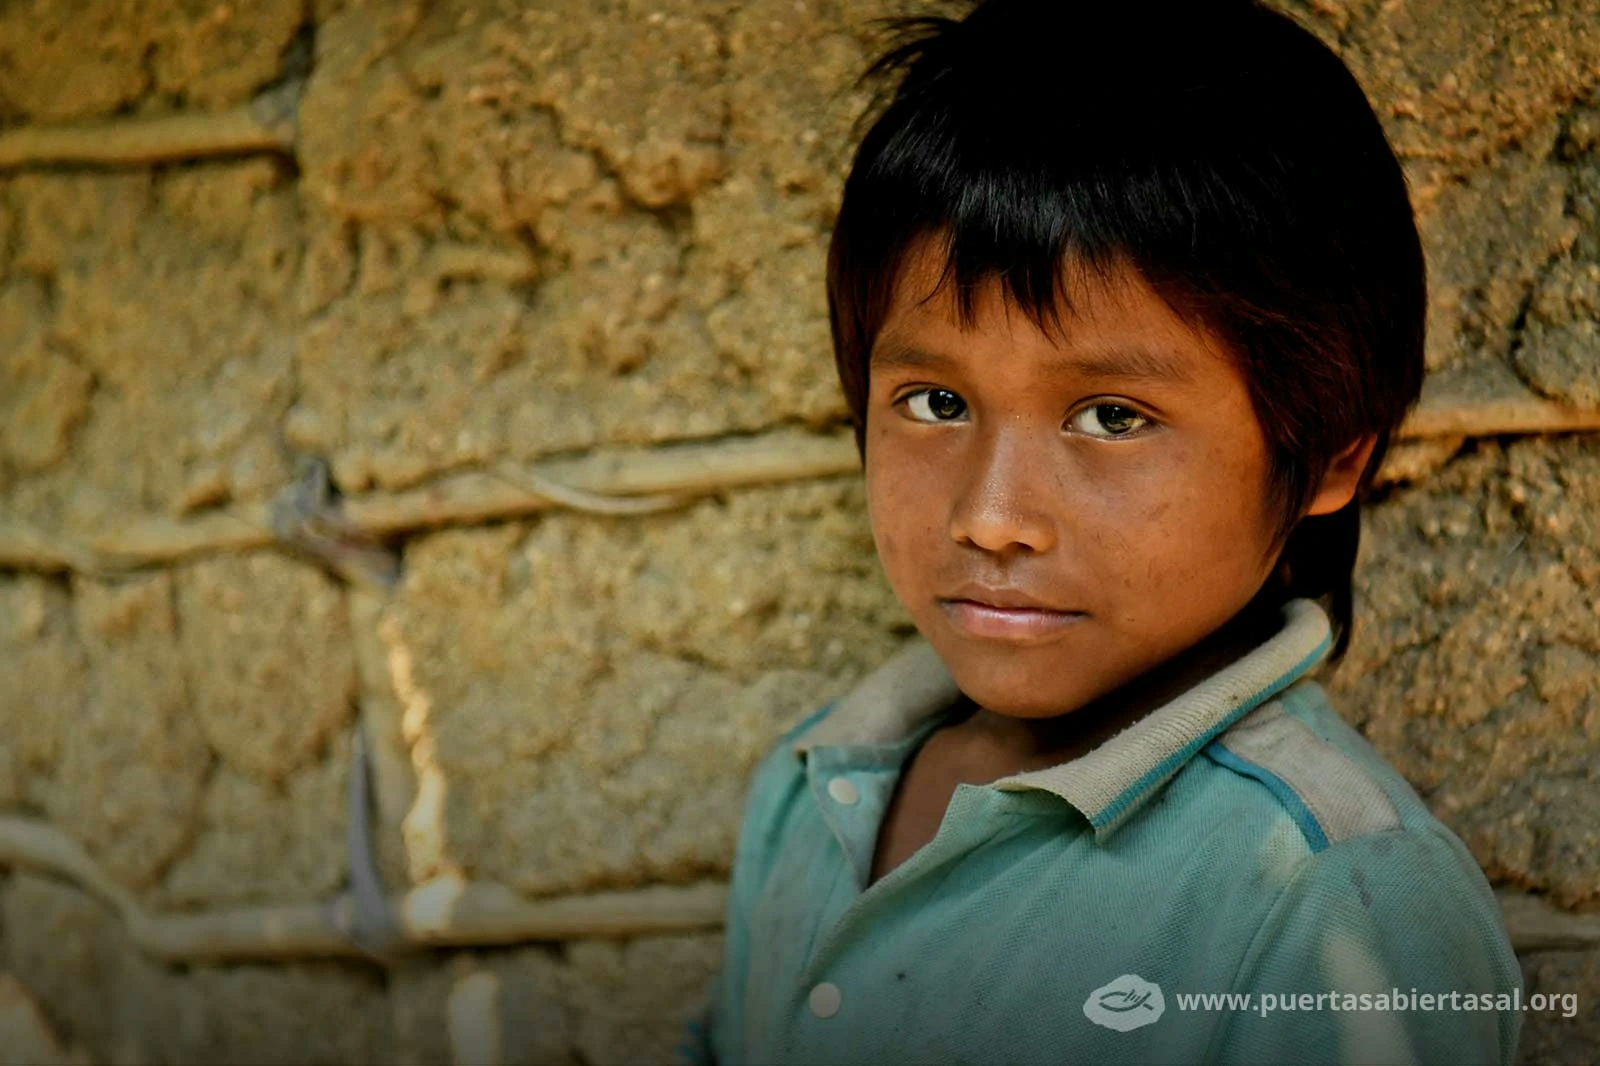 Los niños son los más afectados por la persecución en Colombia